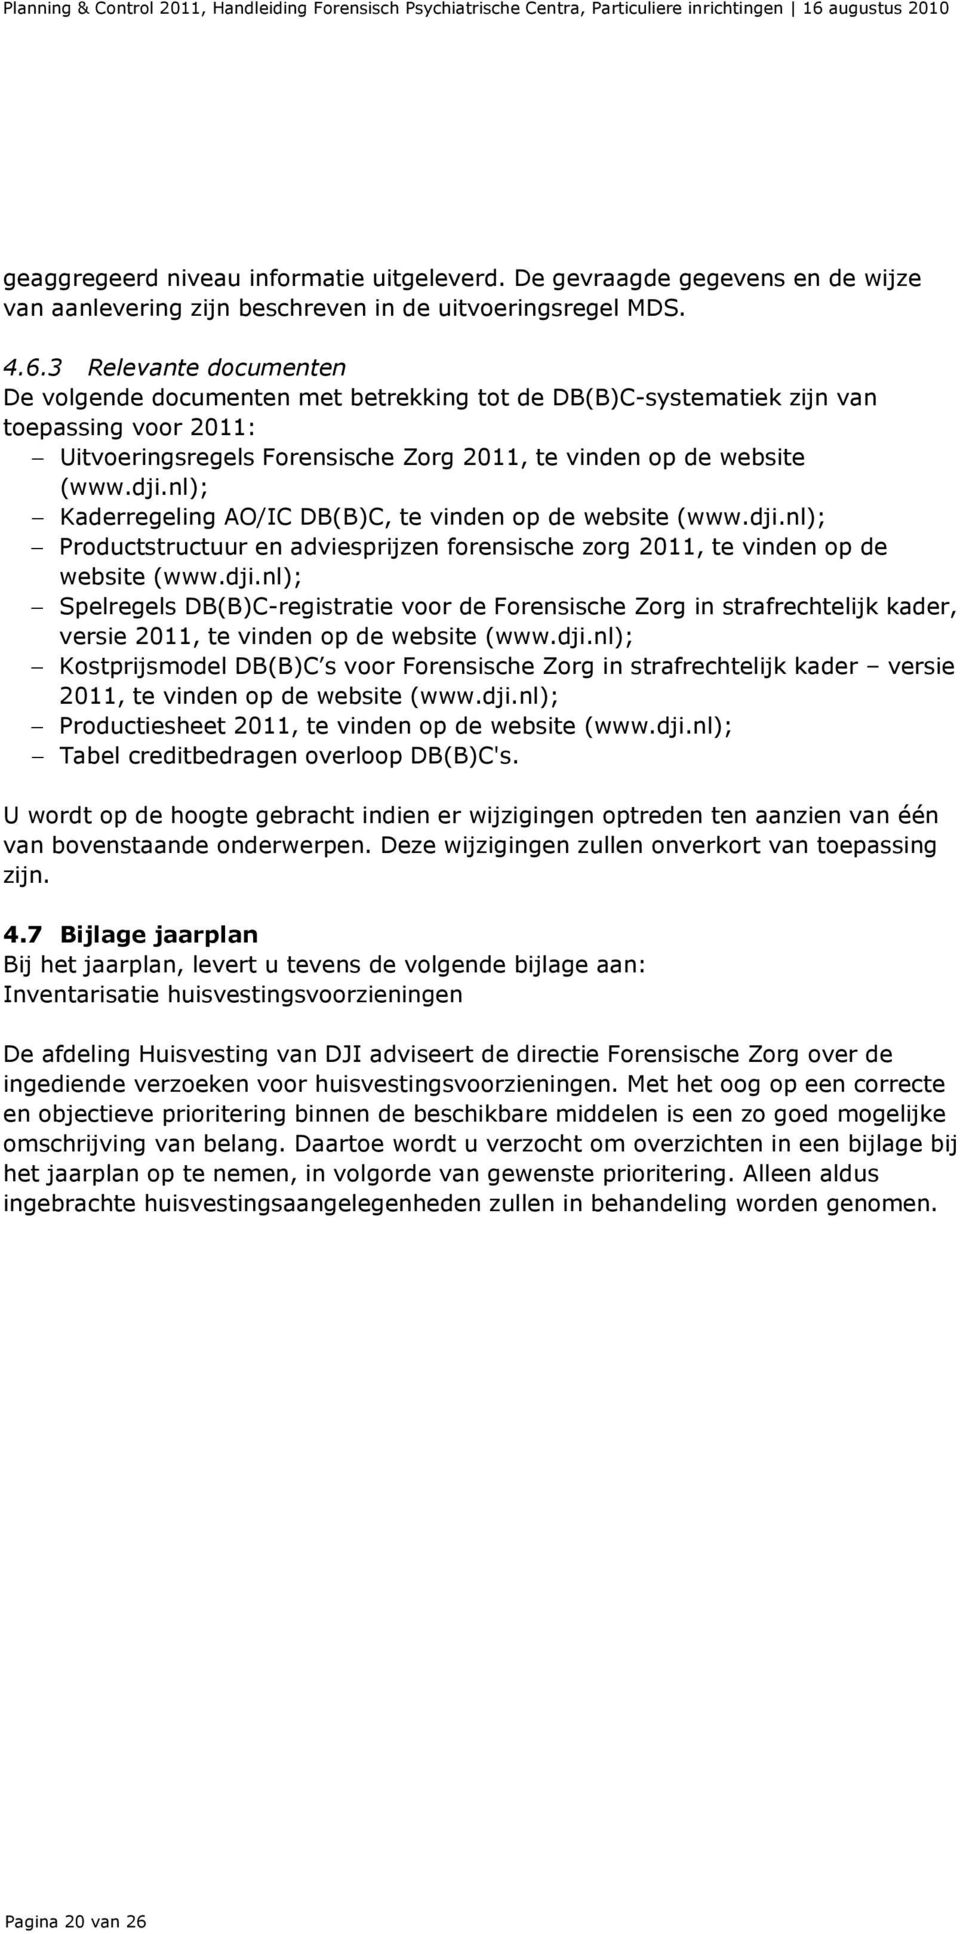 nl); Kaderregeling AO/IC DB(B)C, te vinden op de website (www.dji.nl); Productstructuur en adviesprijzen forensische zorg 2011, te vinden op de website (www.dji.nl); Spelregels DB(B)C-registratie voor de Forensische Zorg in strafrechtelijk kader, versie 2011, te vinden op de website (www.